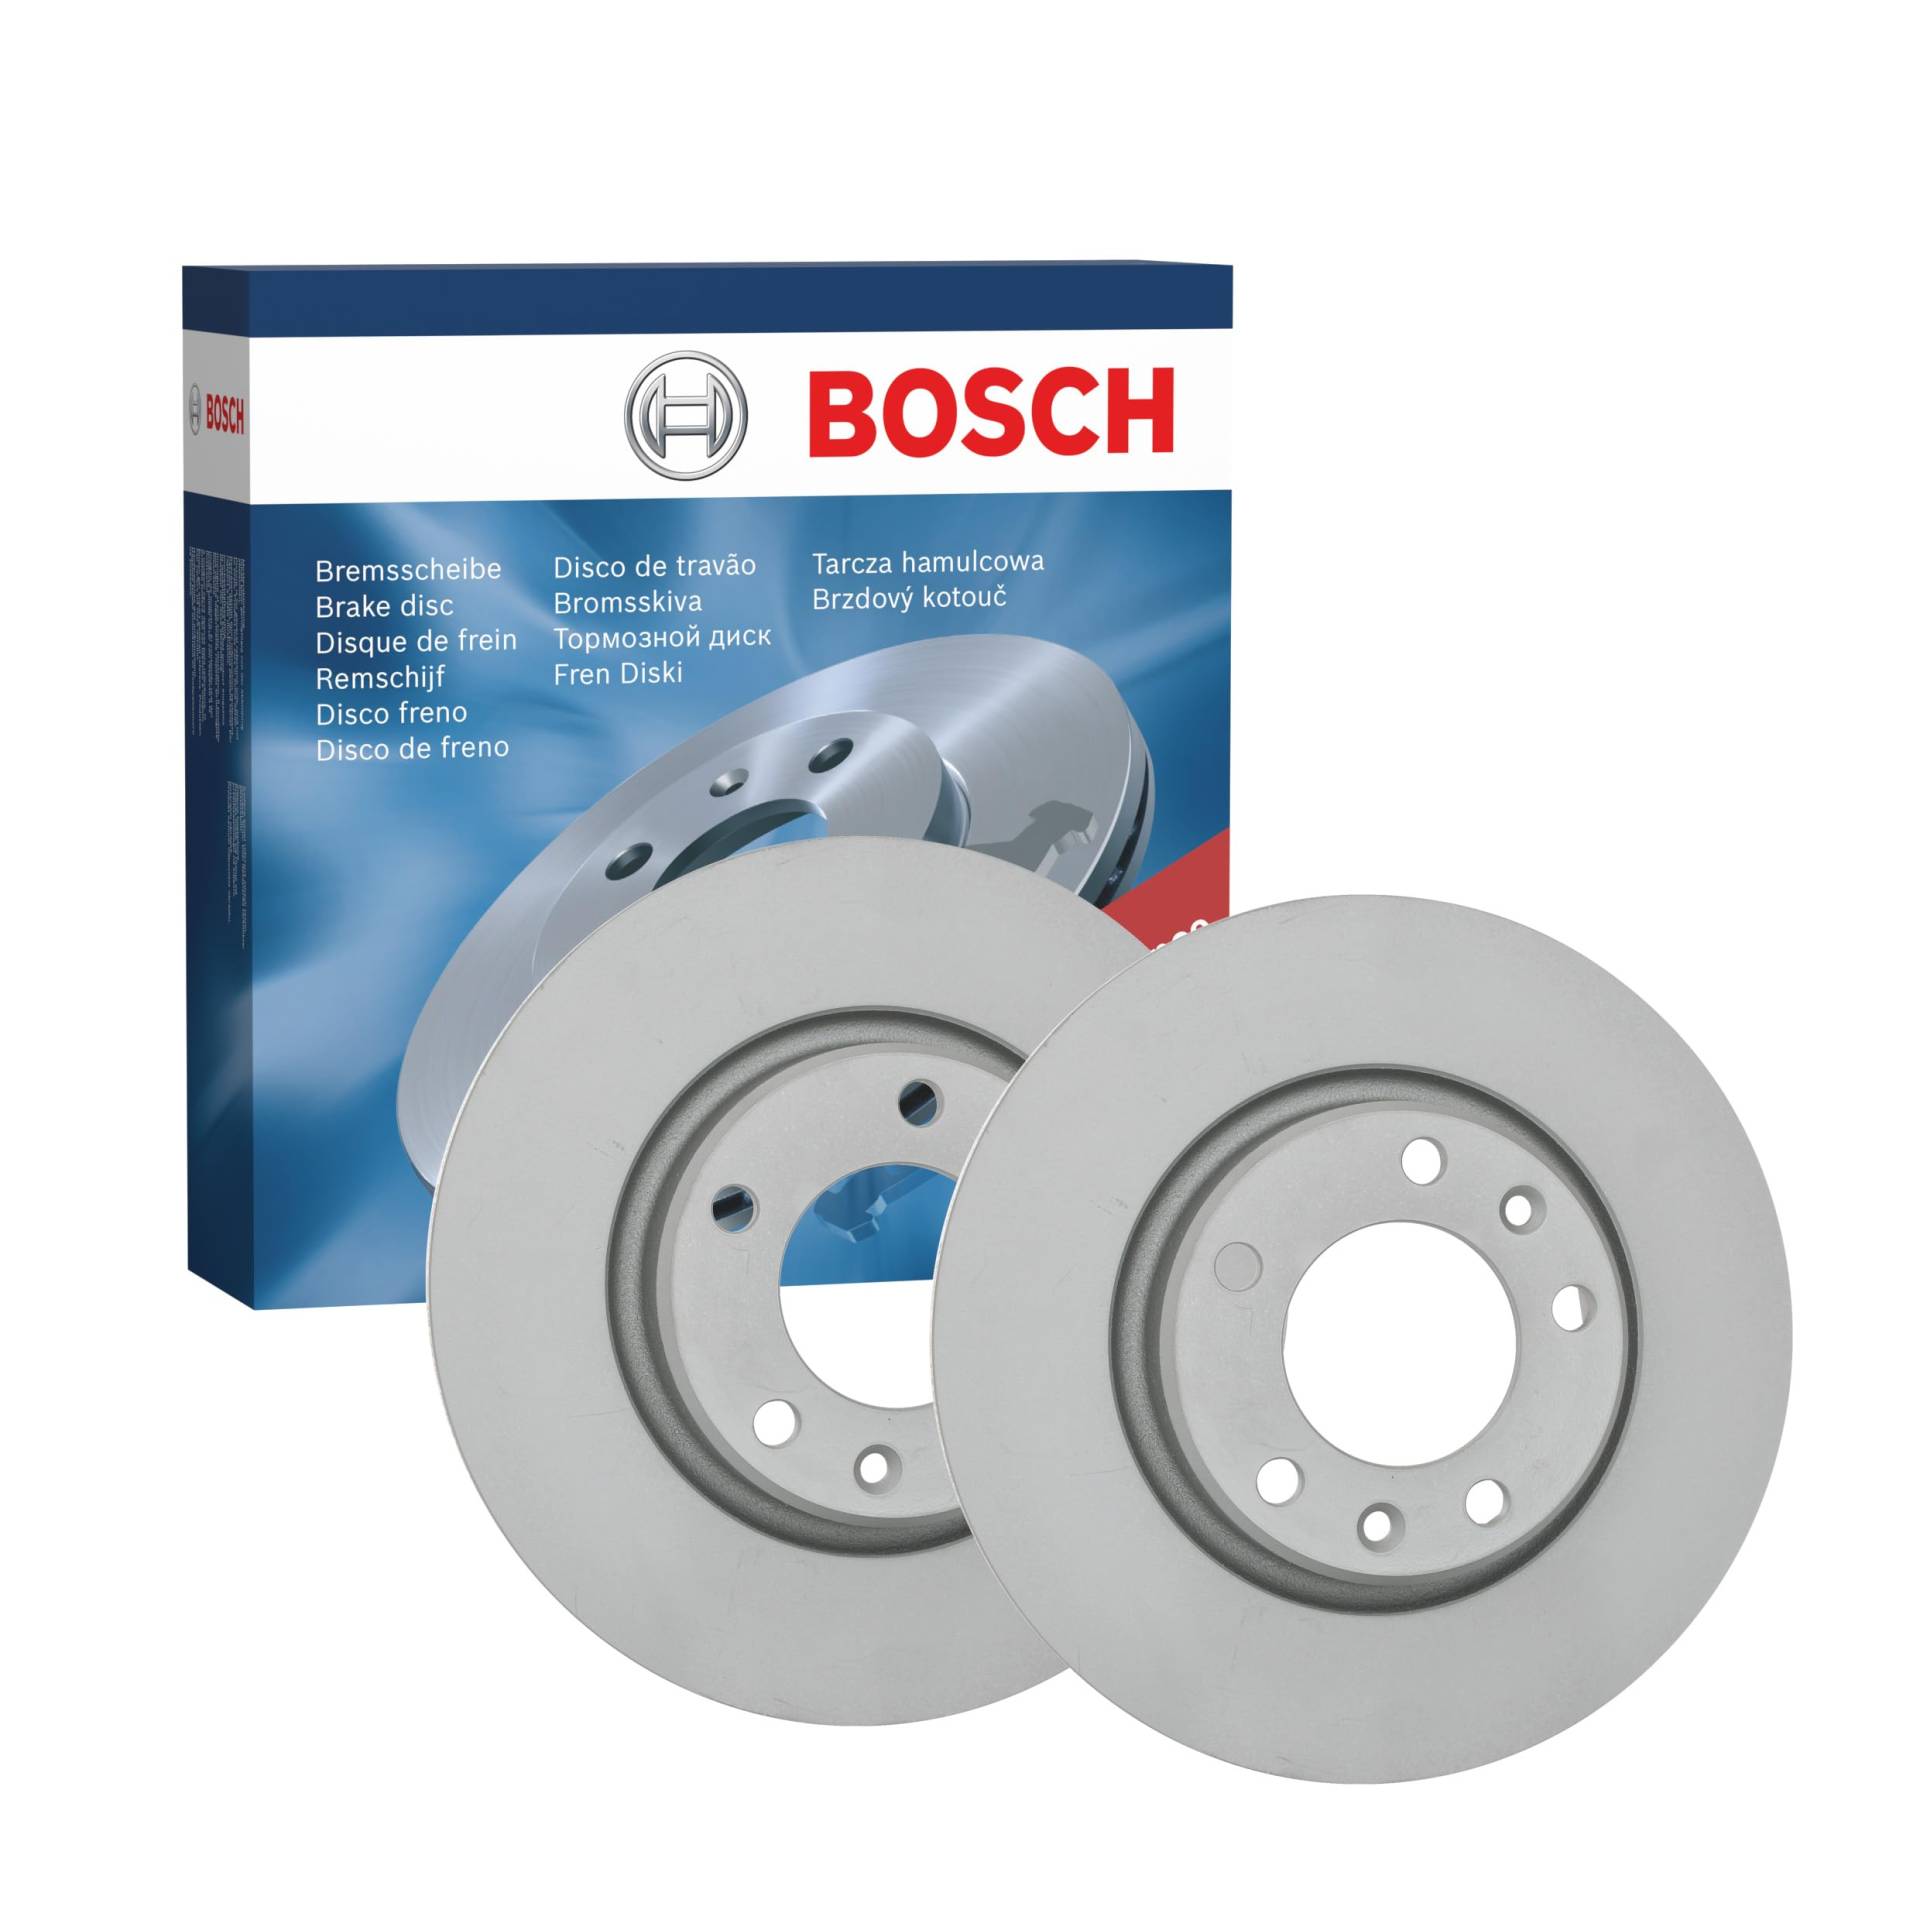 Bosch BD2163 Bremsscheiben - Hinterachse - ECE-R90 Zertifizierung - zwei Bremsscheiben pro Set von Bosch Automotive